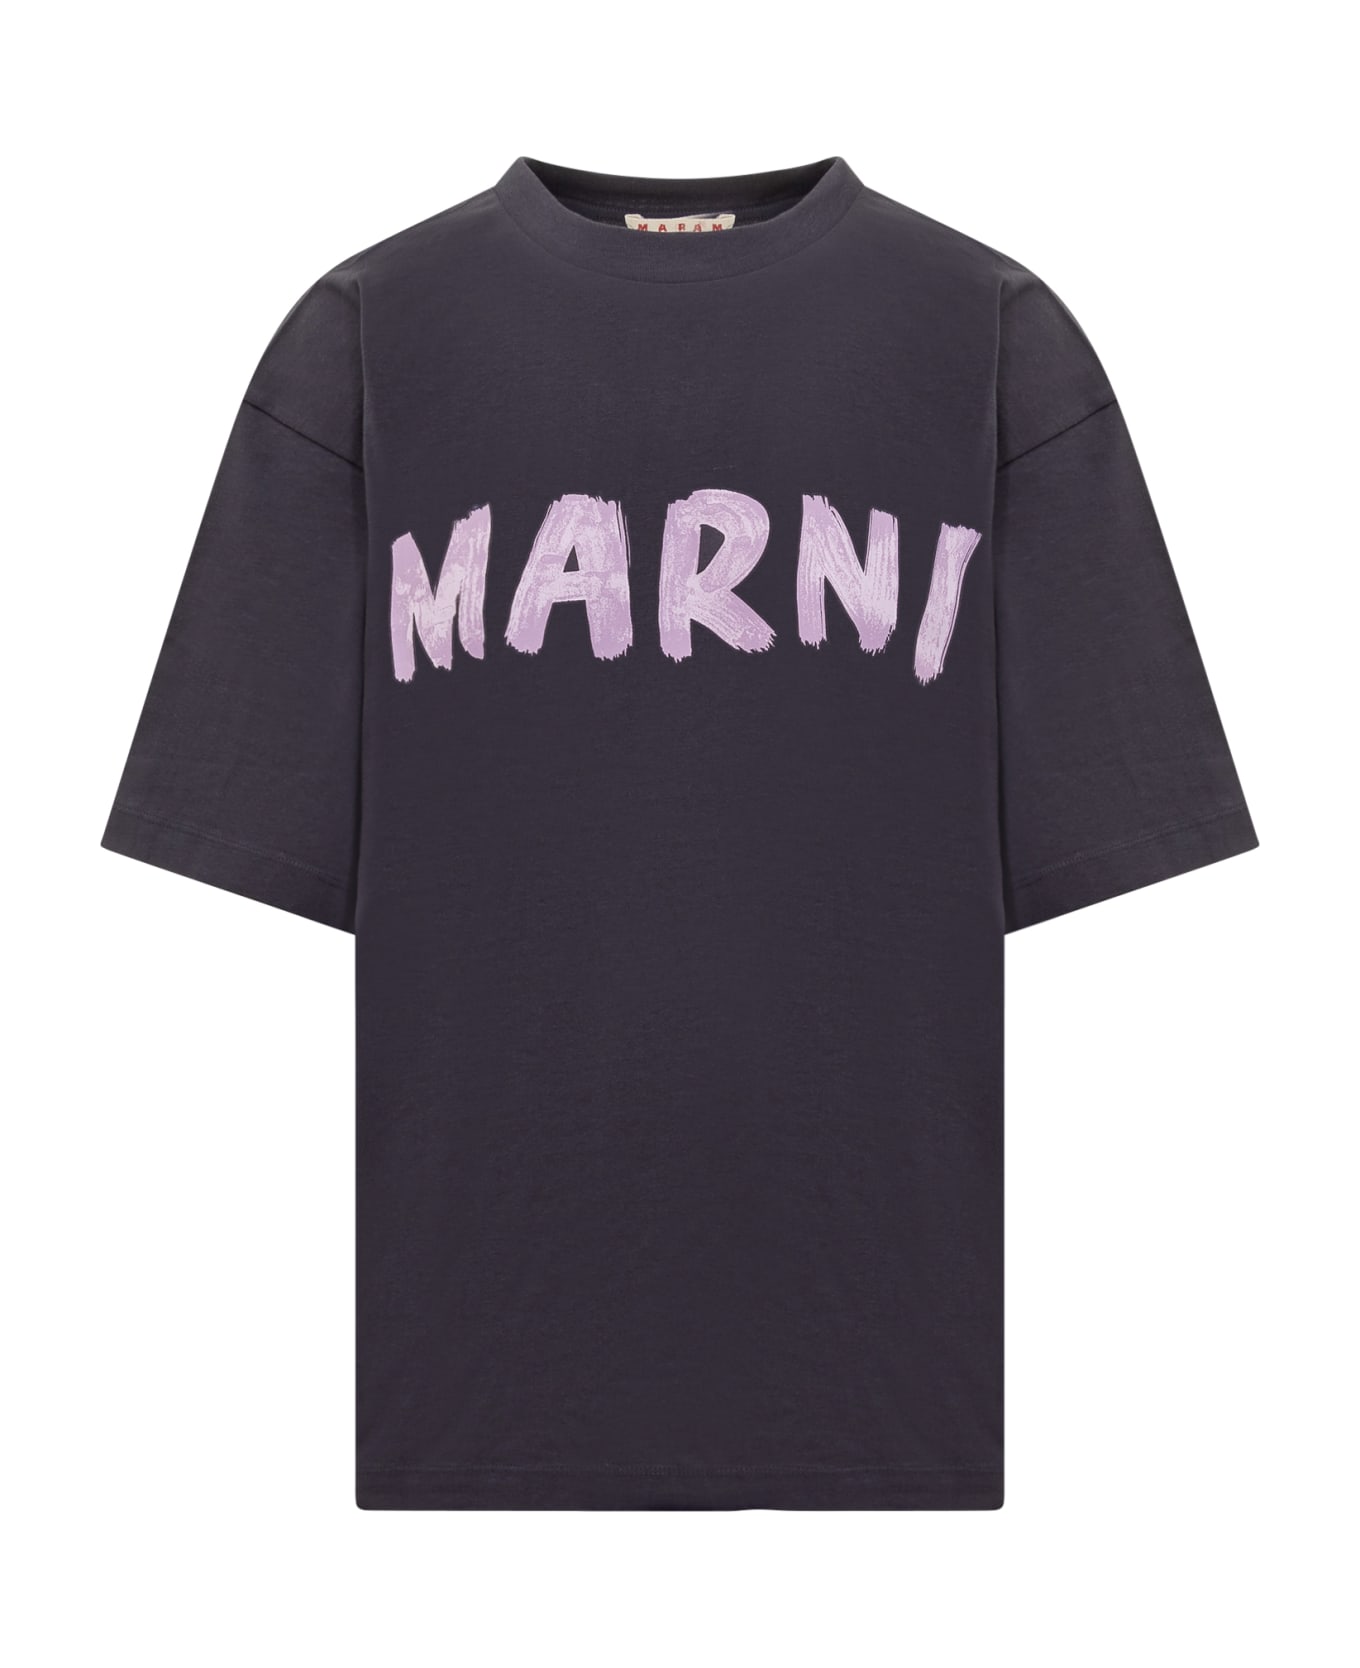 Marni T-shirt - BLU BLACK